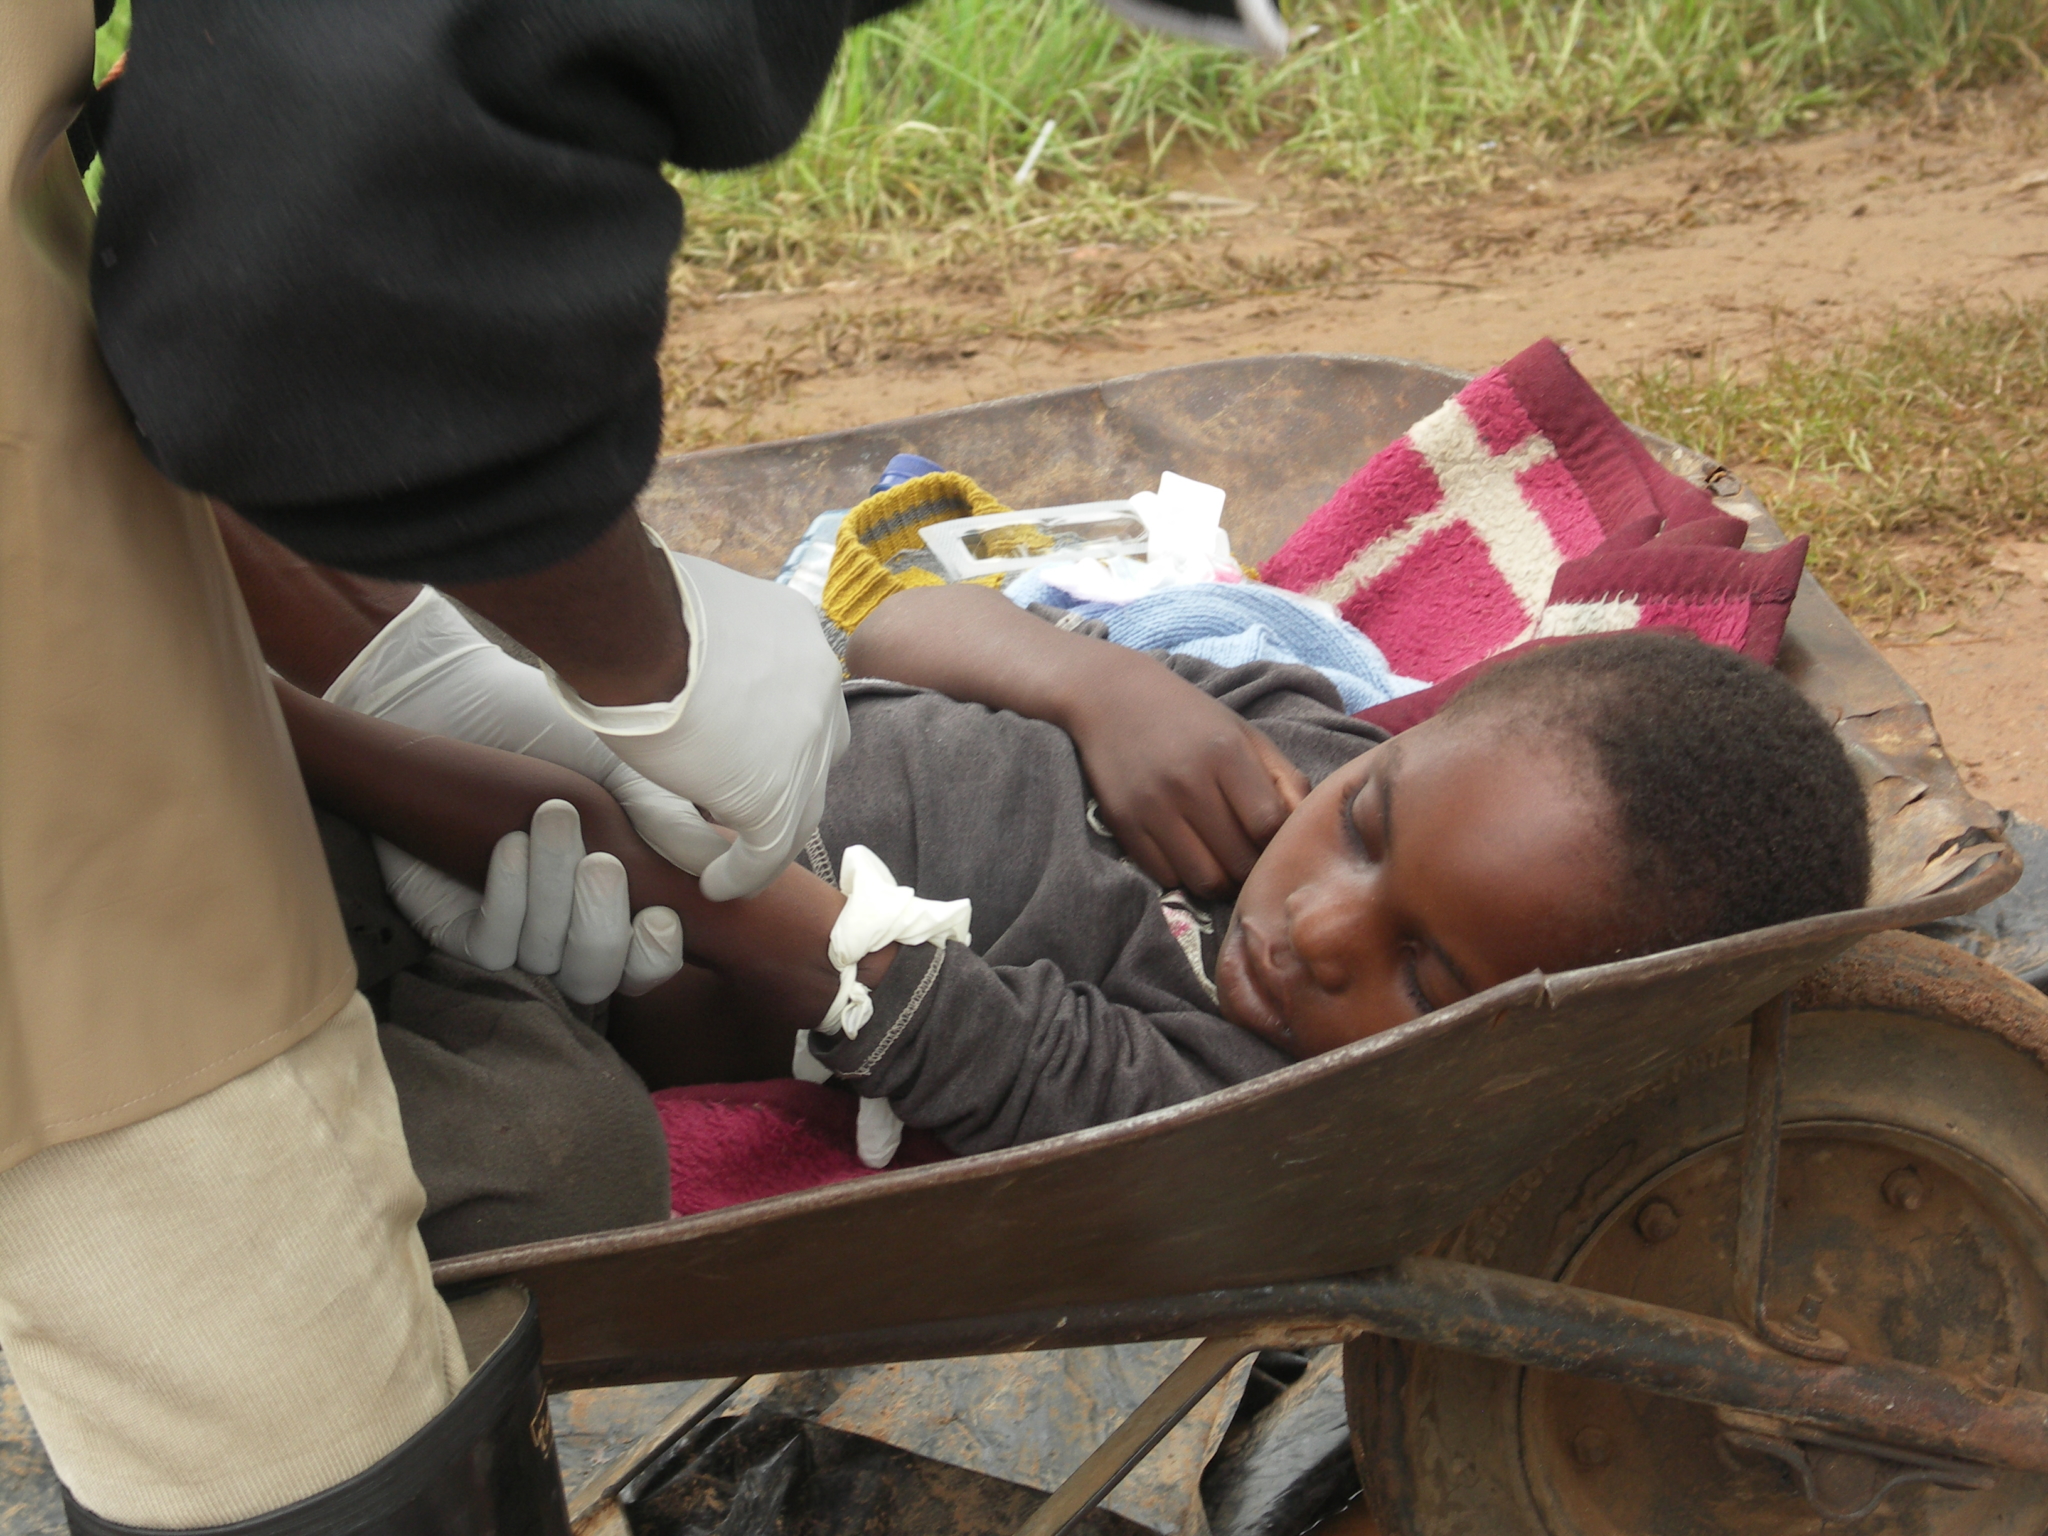 Pacientes com cólera se desidratam e morrem rapidamente. Esse menino foi trazido em um carrinho-de-mão ao Centro de Tratamento de Cólera de Kadoma.Desidratado, precisou tomar soro antes ir para a maca.